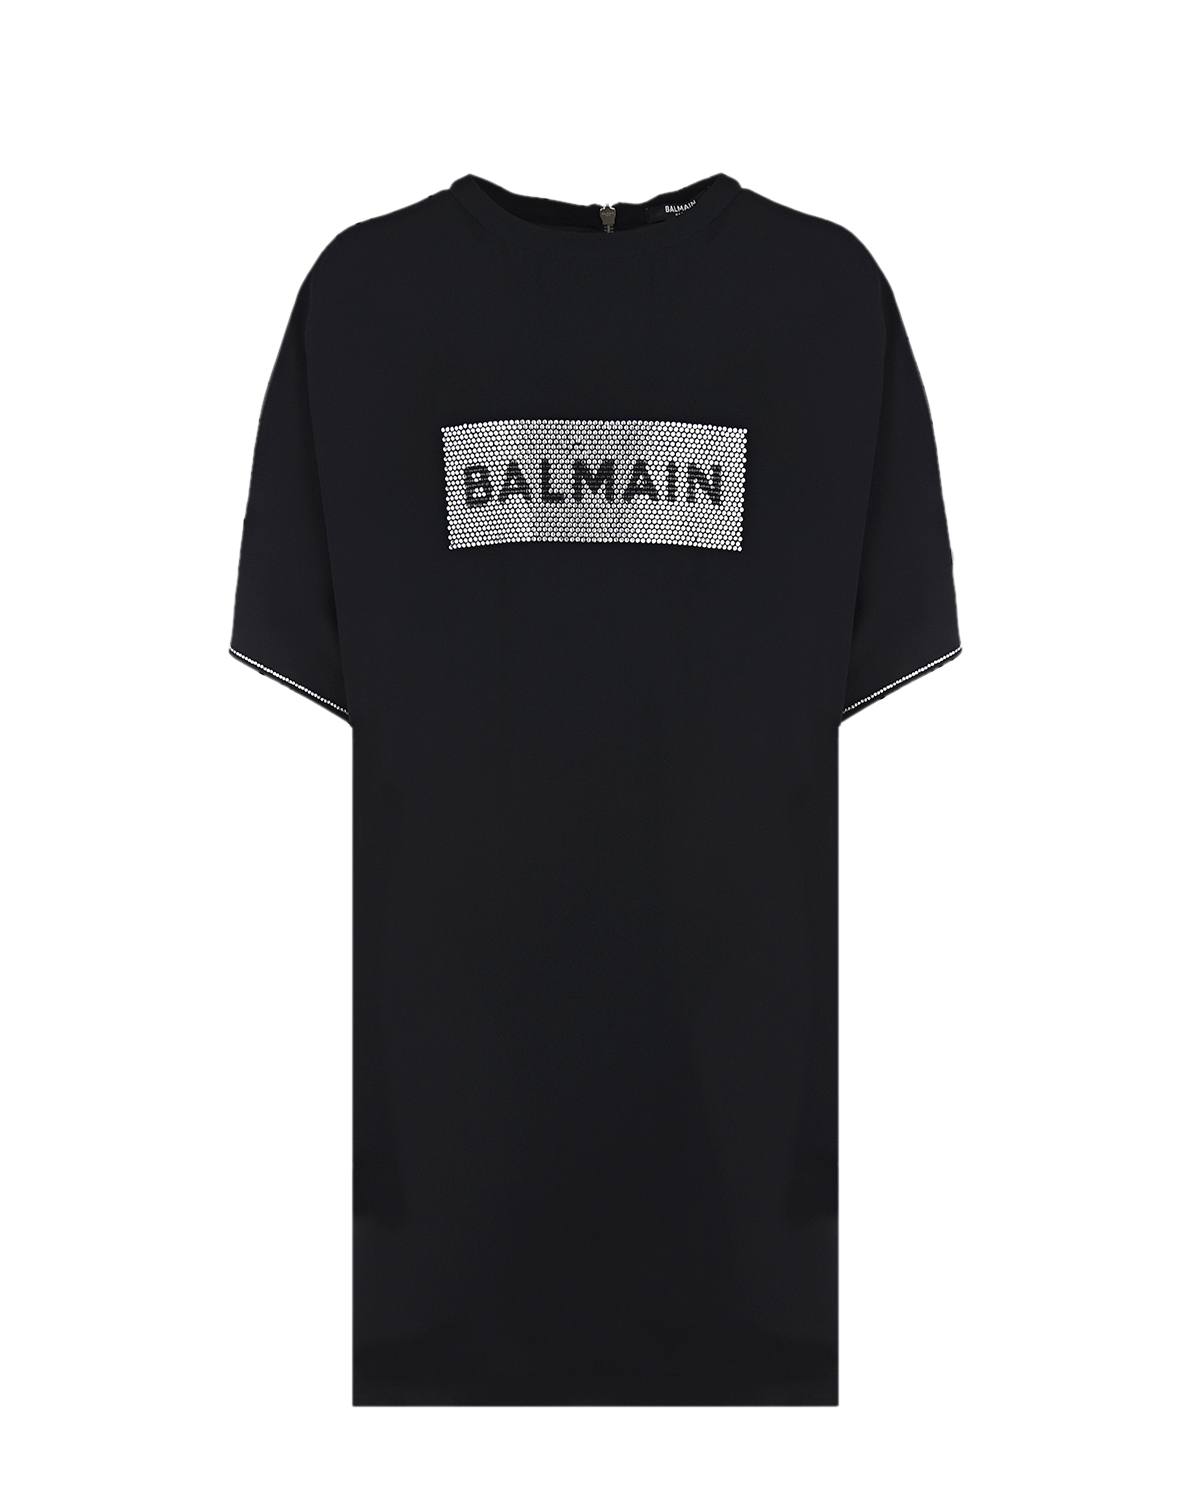 Платье с прямоугольным логотипом из страз Balmain детское, размер 164, цвет черный - фото 1